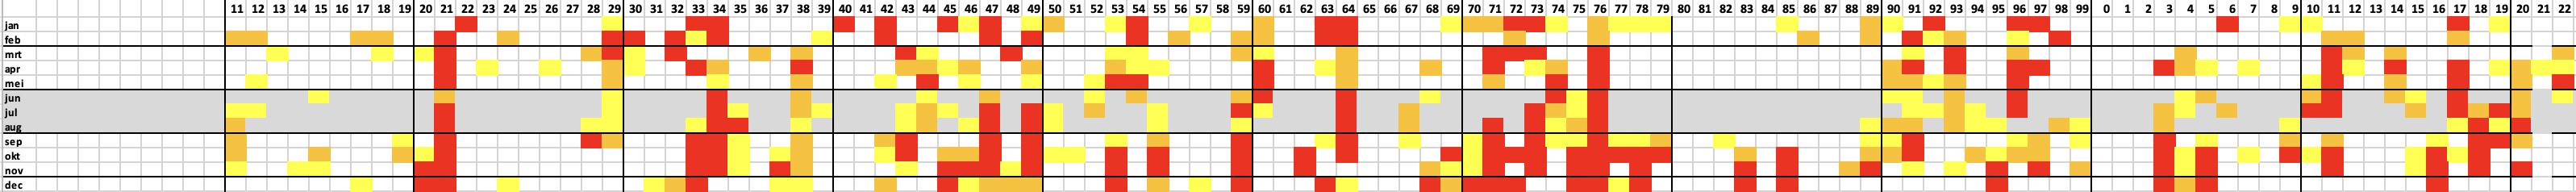 Maanden in de hele meetreeks van de Maas (1911 is links, 2022 is rechts) met lage tot zeer lage afvoeren: rood = < 50%, oranje tussen 50 en 60% en geel tussen 60 en 70% van het langjarig gemiddelde.